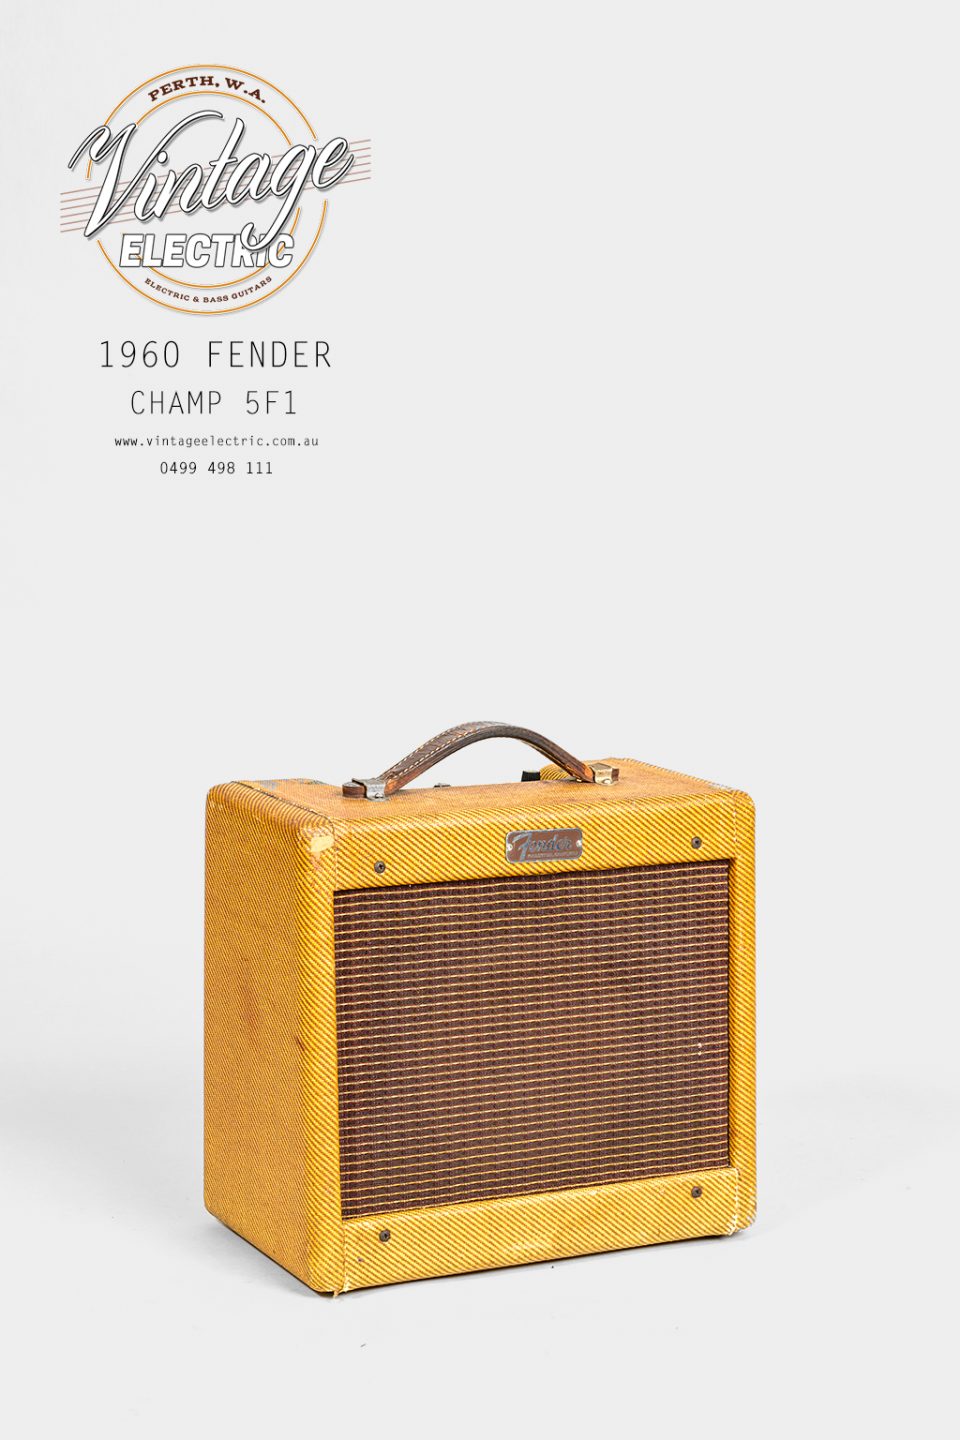 1960 Fender Champ 5F1 A